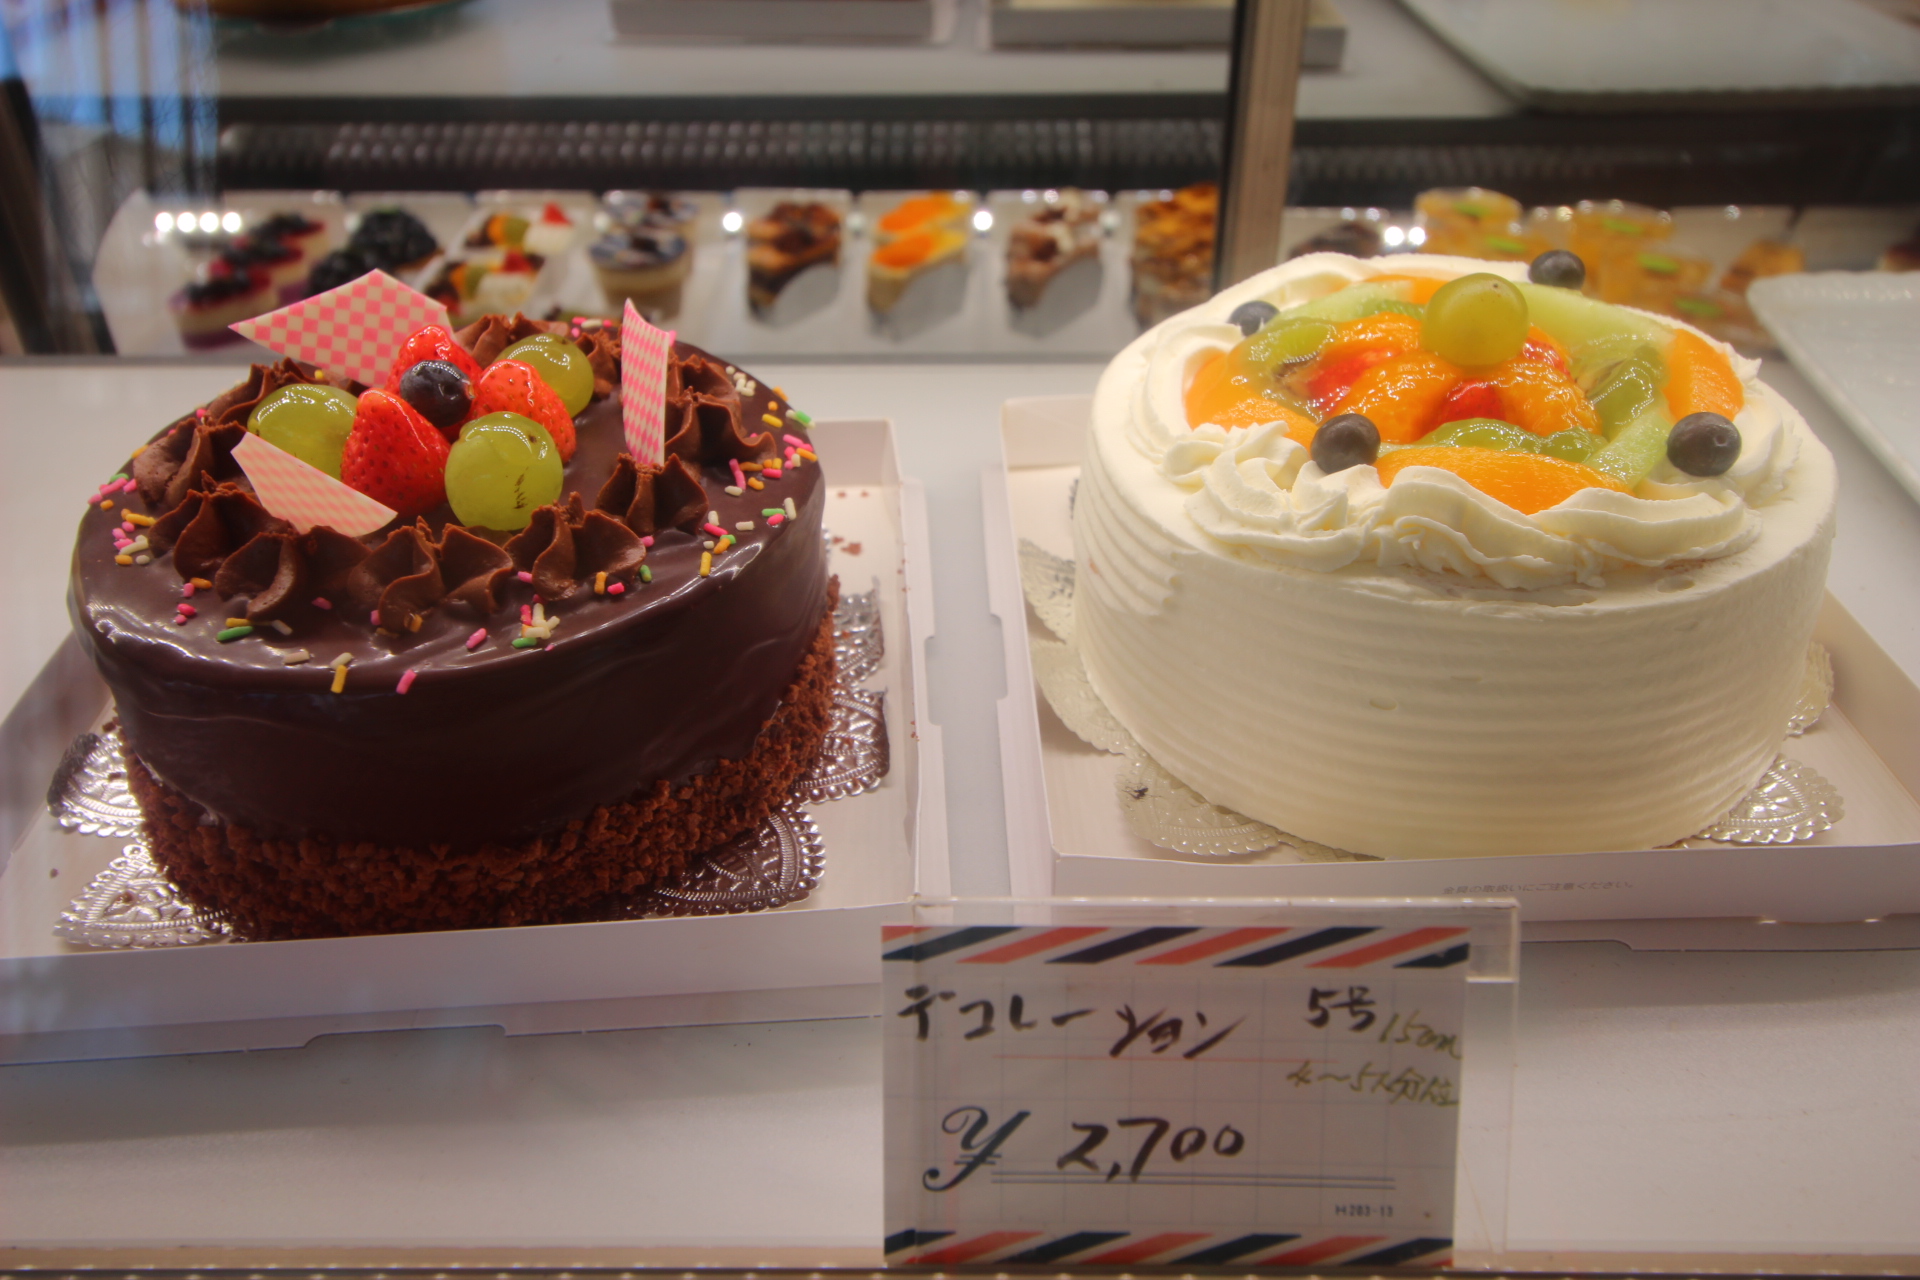 カトレヤ 熊本のケーキ屋にある 大人気シュークリームが絶品 熊本ポータル くまライク